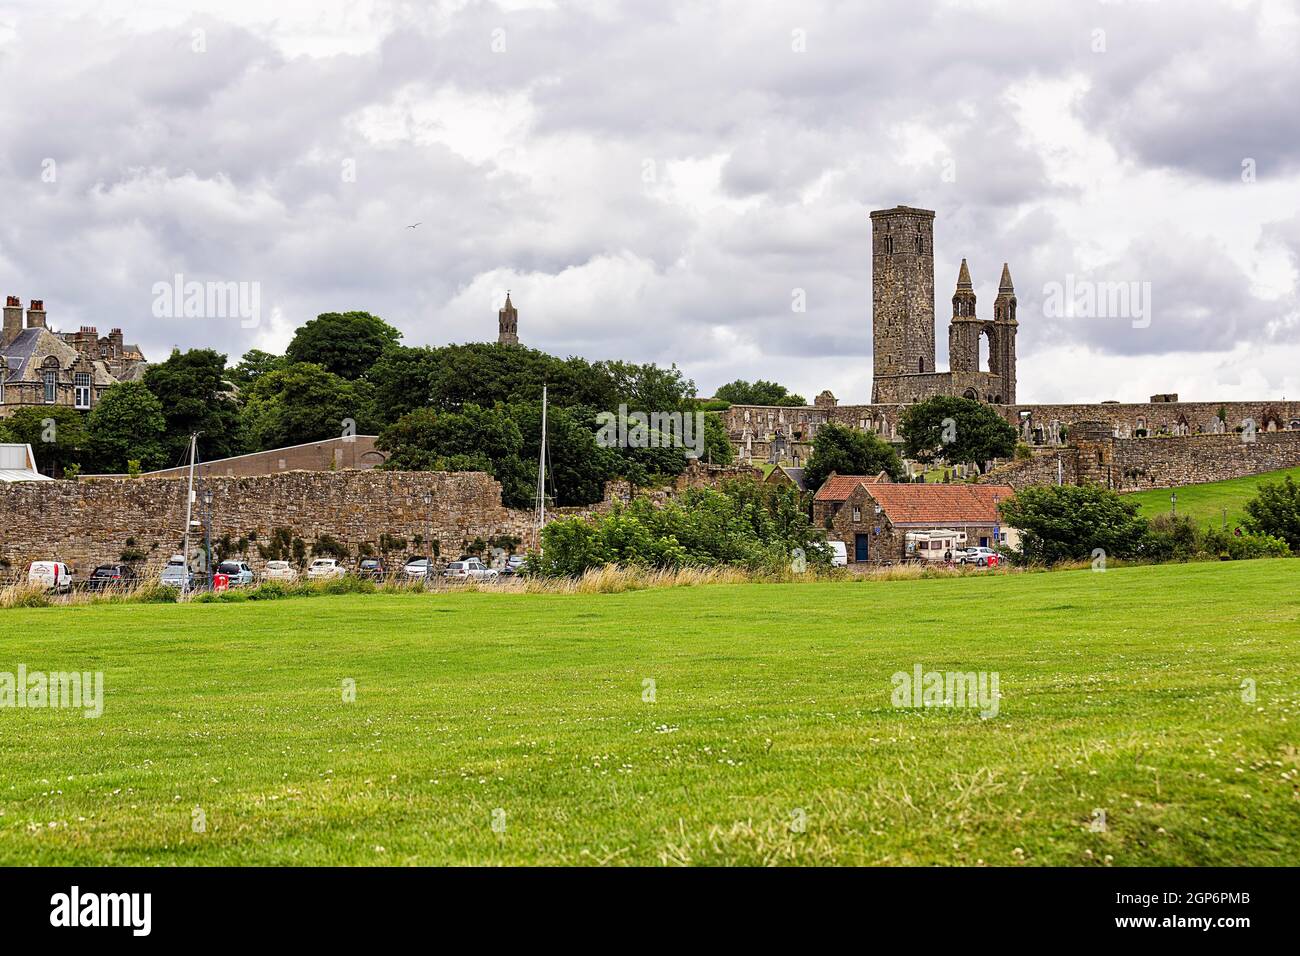 Blick auf das Dorf St Andrews mit den Ruinen der Kathedrale, St Andrews, Fife, Schottland, Vereinigtes Königreich Stockfoto